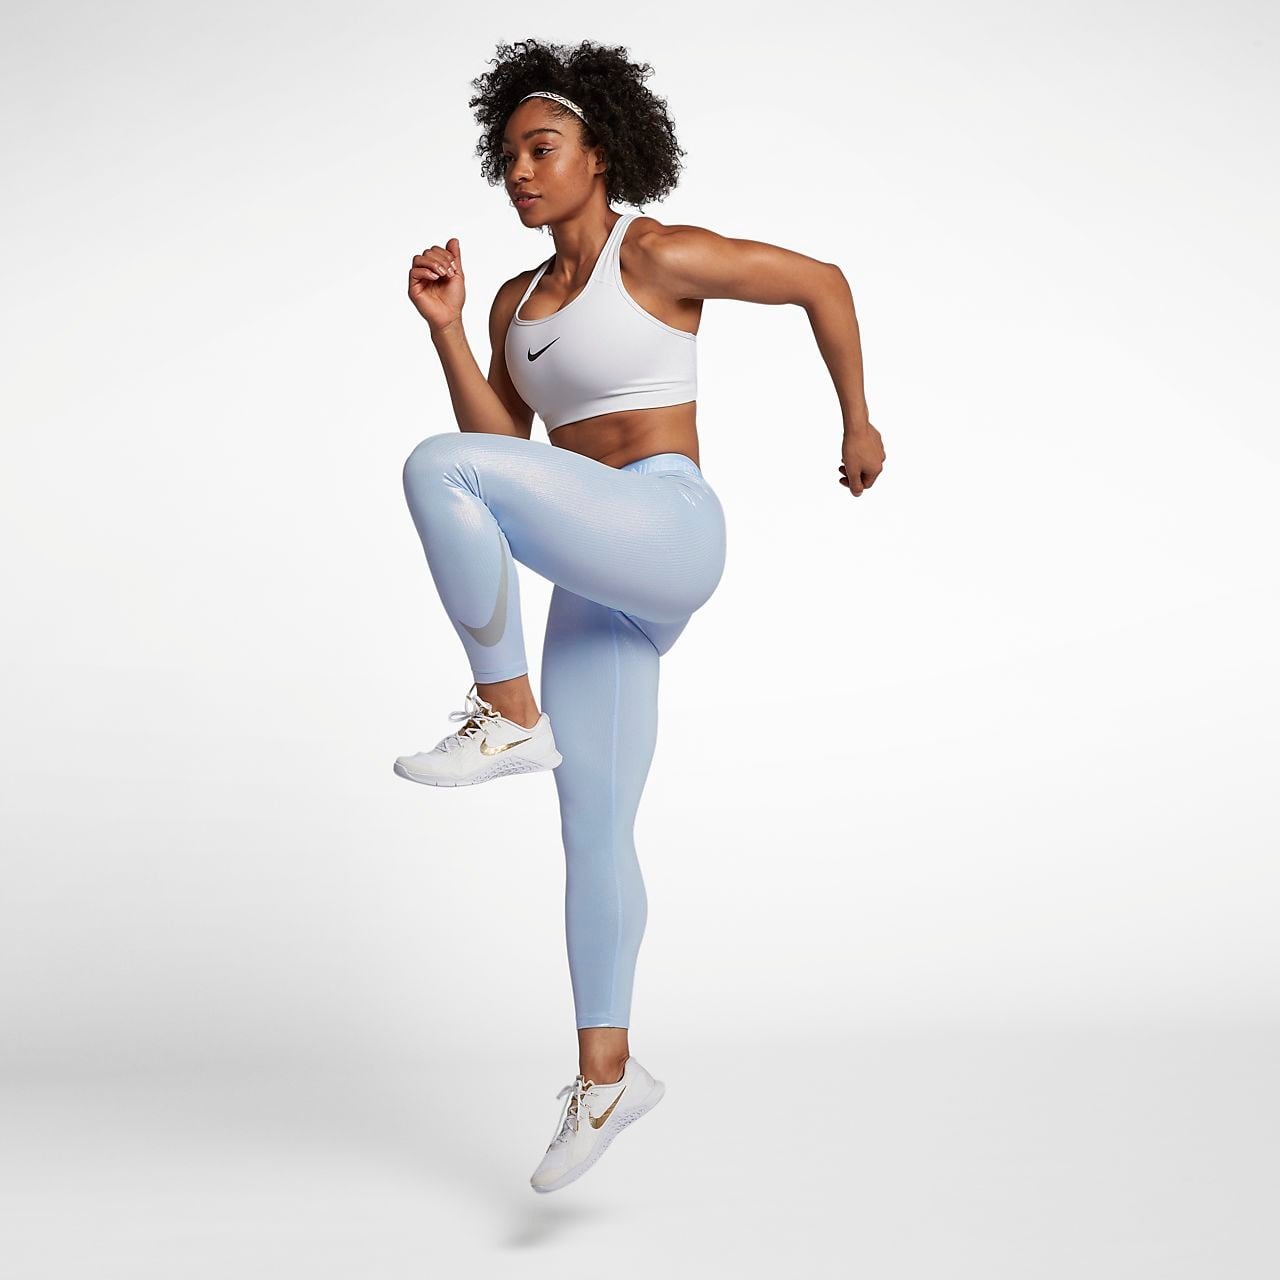 Nike Mermaid Workout Gear | POPSUGAR Fitness